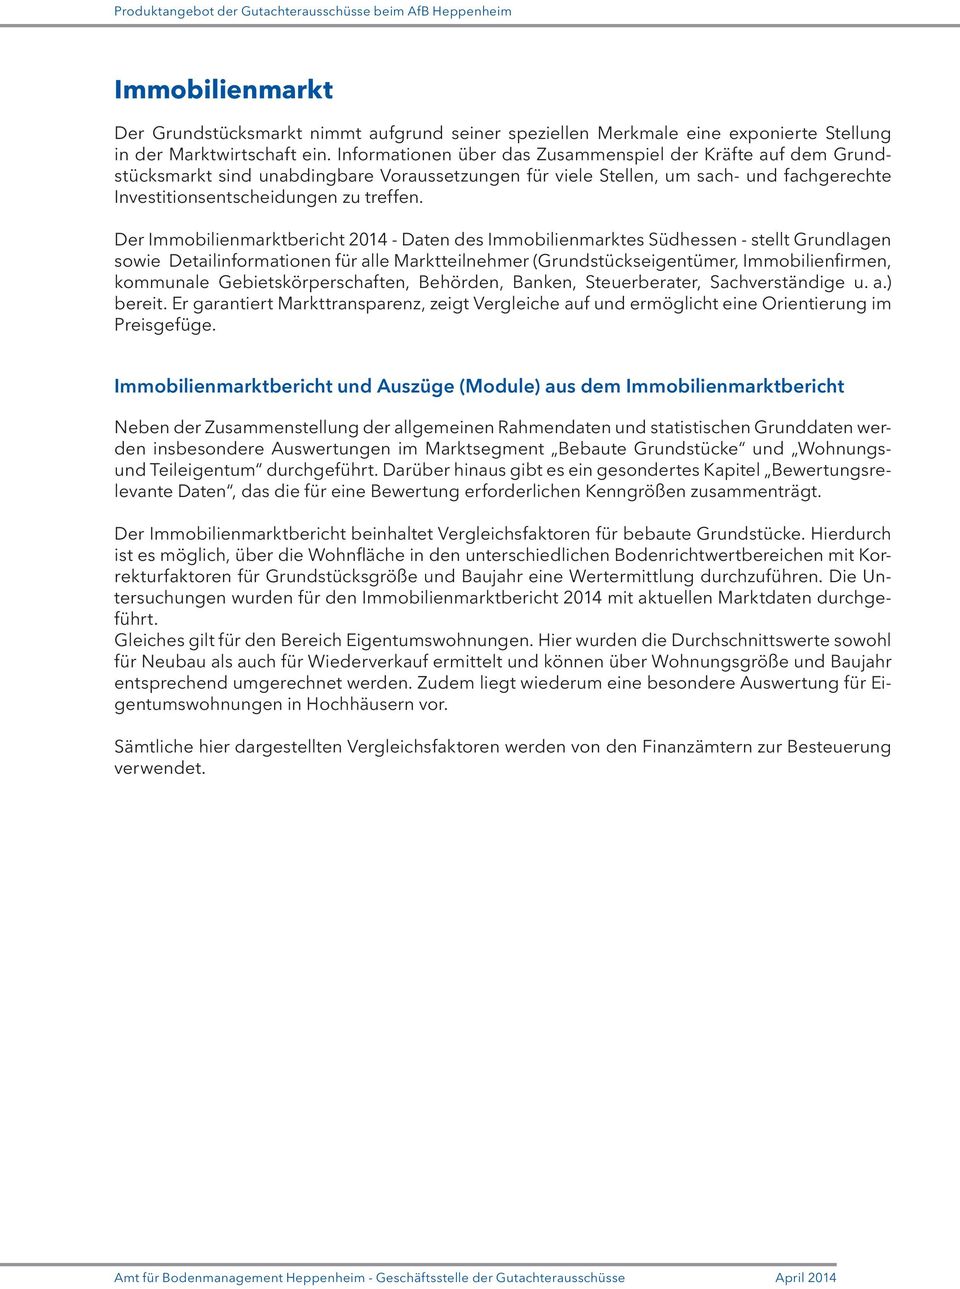 Der Immobilienmarktbericht 2014 - Daten des Immobilienmarktes Südhessen - stellt Grundlagen sowie Detailinformationen für alle Marktteilnehmer (Grundstückseigentümer, Immobilienfirmen, kommunale